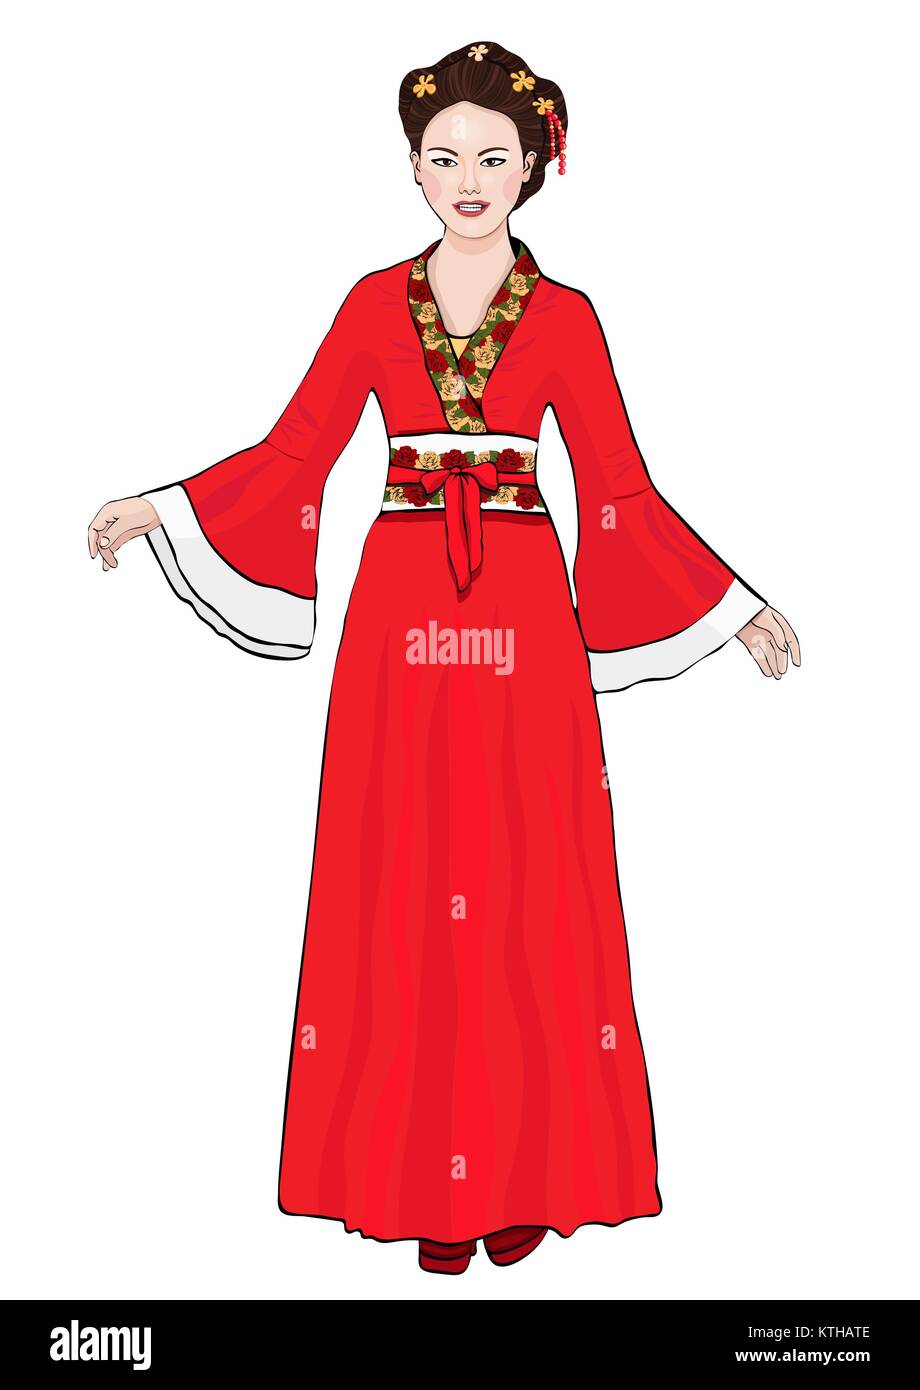 Mädchen in der chinesischen Tracht steht vorne, Vektor Zeichnung cartoon Portrait. Asiatische Frau in voller Länge in einem roten Hanfu, in einem traditionellen Kleid mit floralen Ornament, auf weißem Hintergrund Stock Vektor